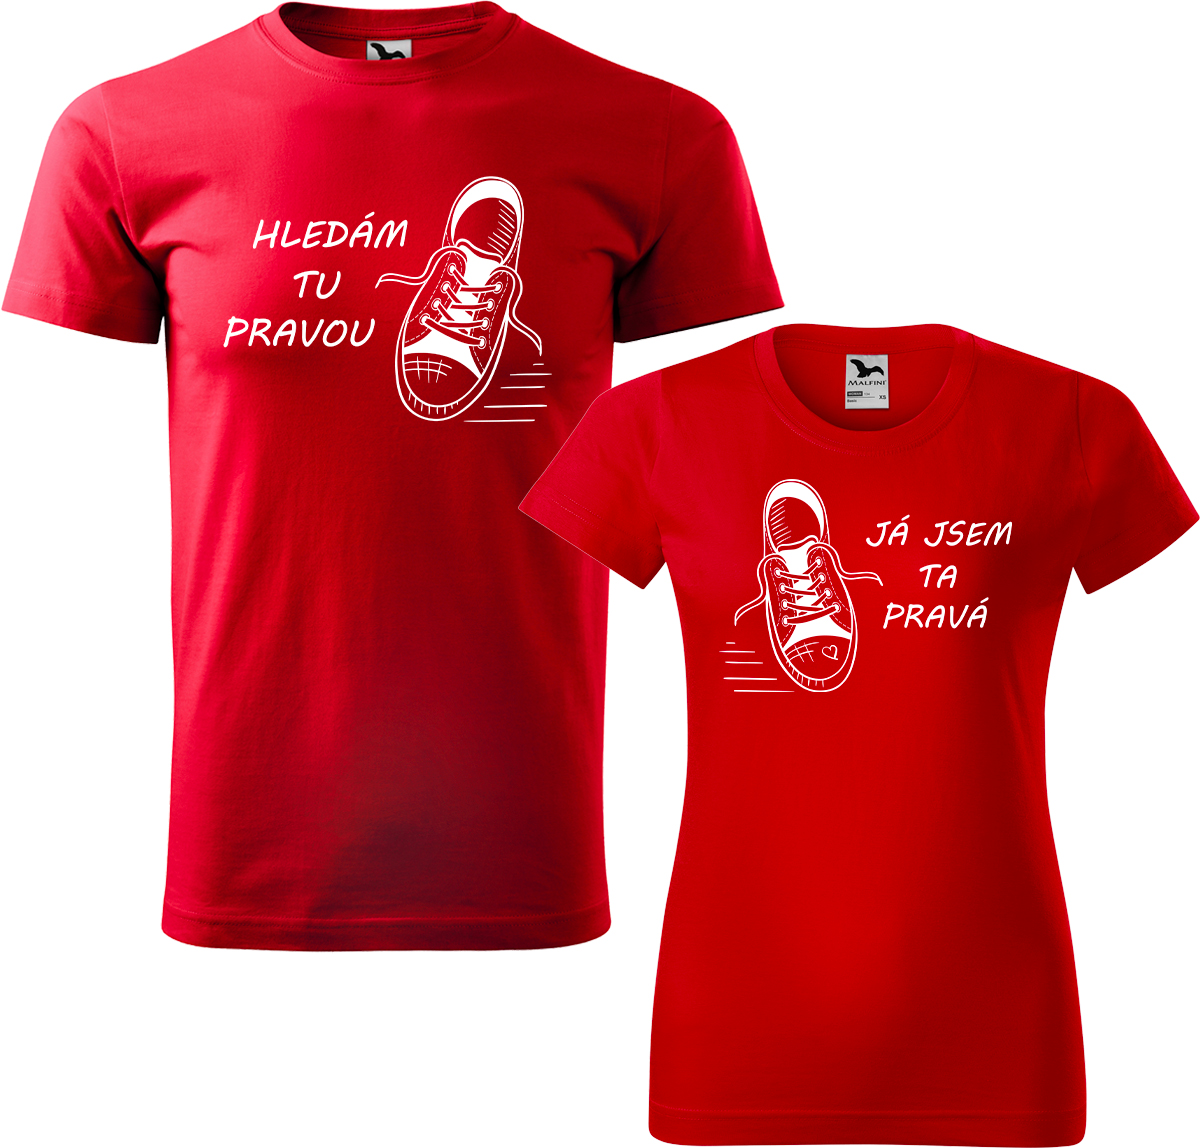 Trička pro páry - Kecky Barva: Červená (07), Velikost dámské tričko: S, Velikost pánské tričko: L